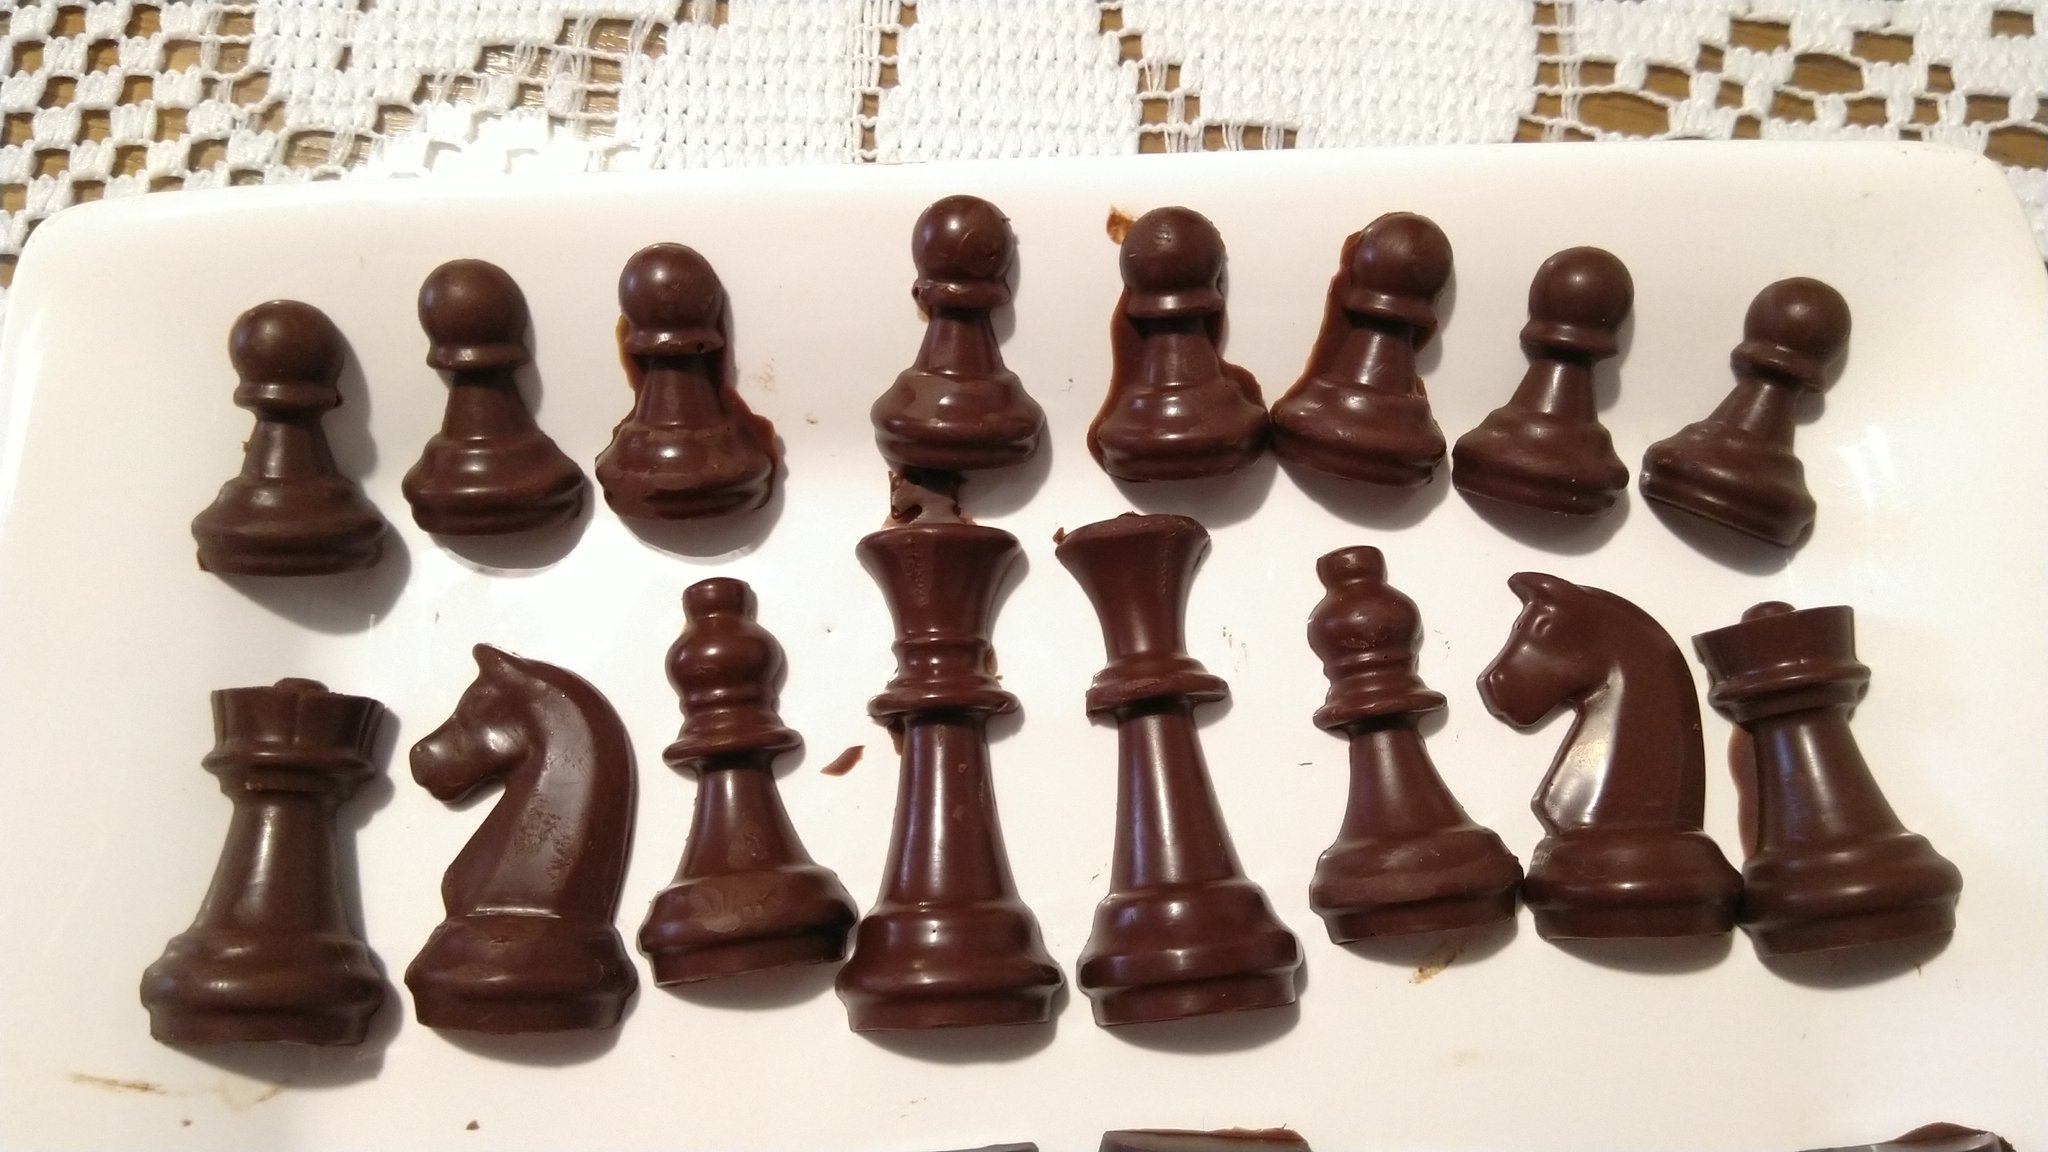 Follow Chess #chess #followchess #benkochess #benkovic